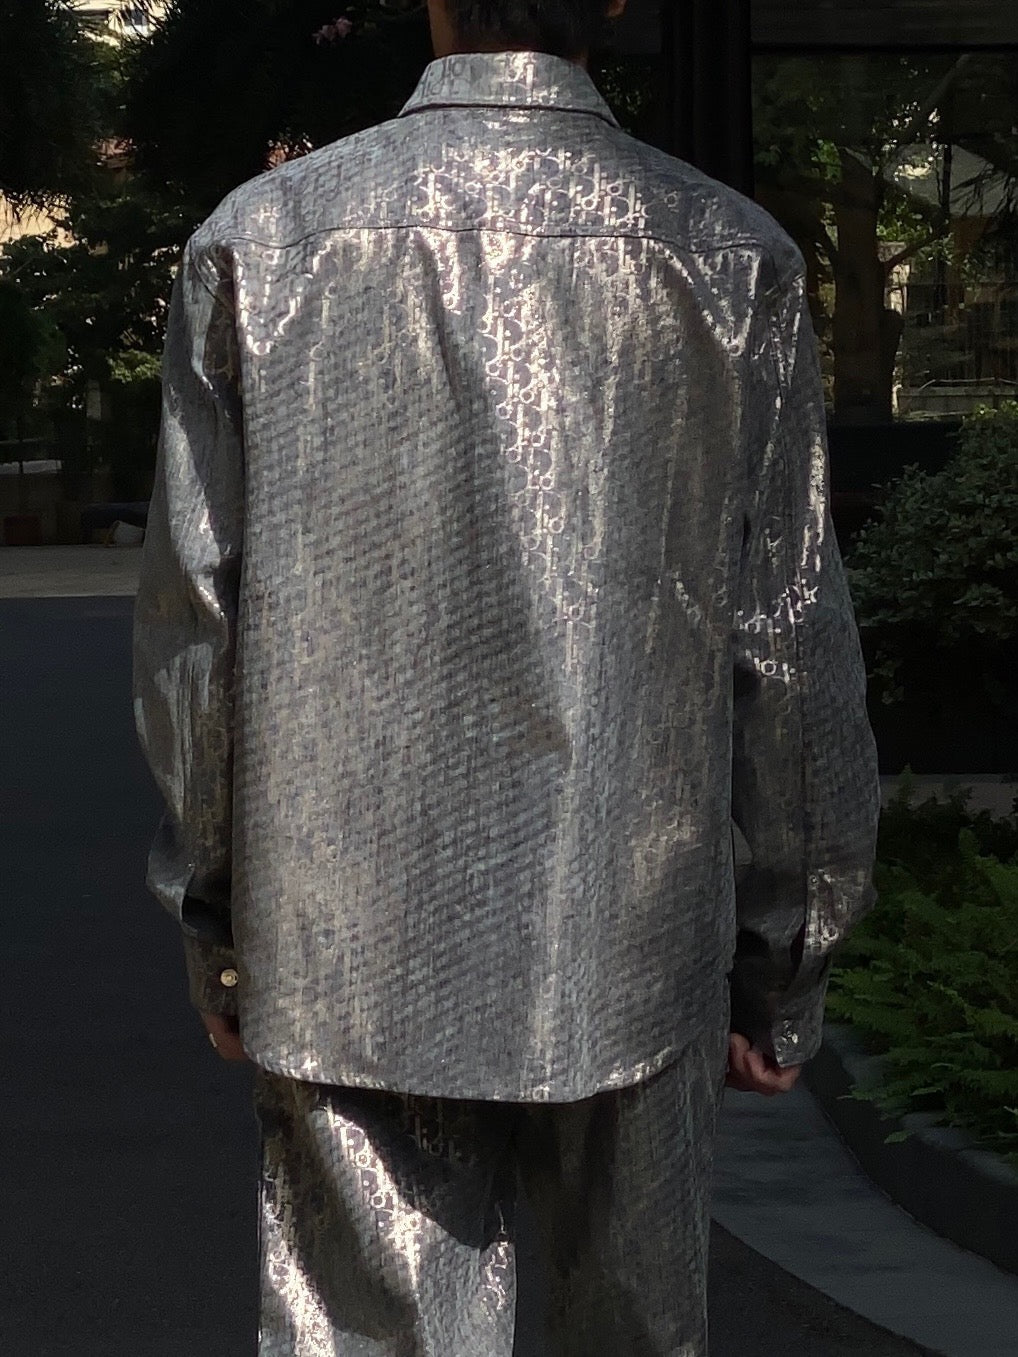 Silver grey Jacket